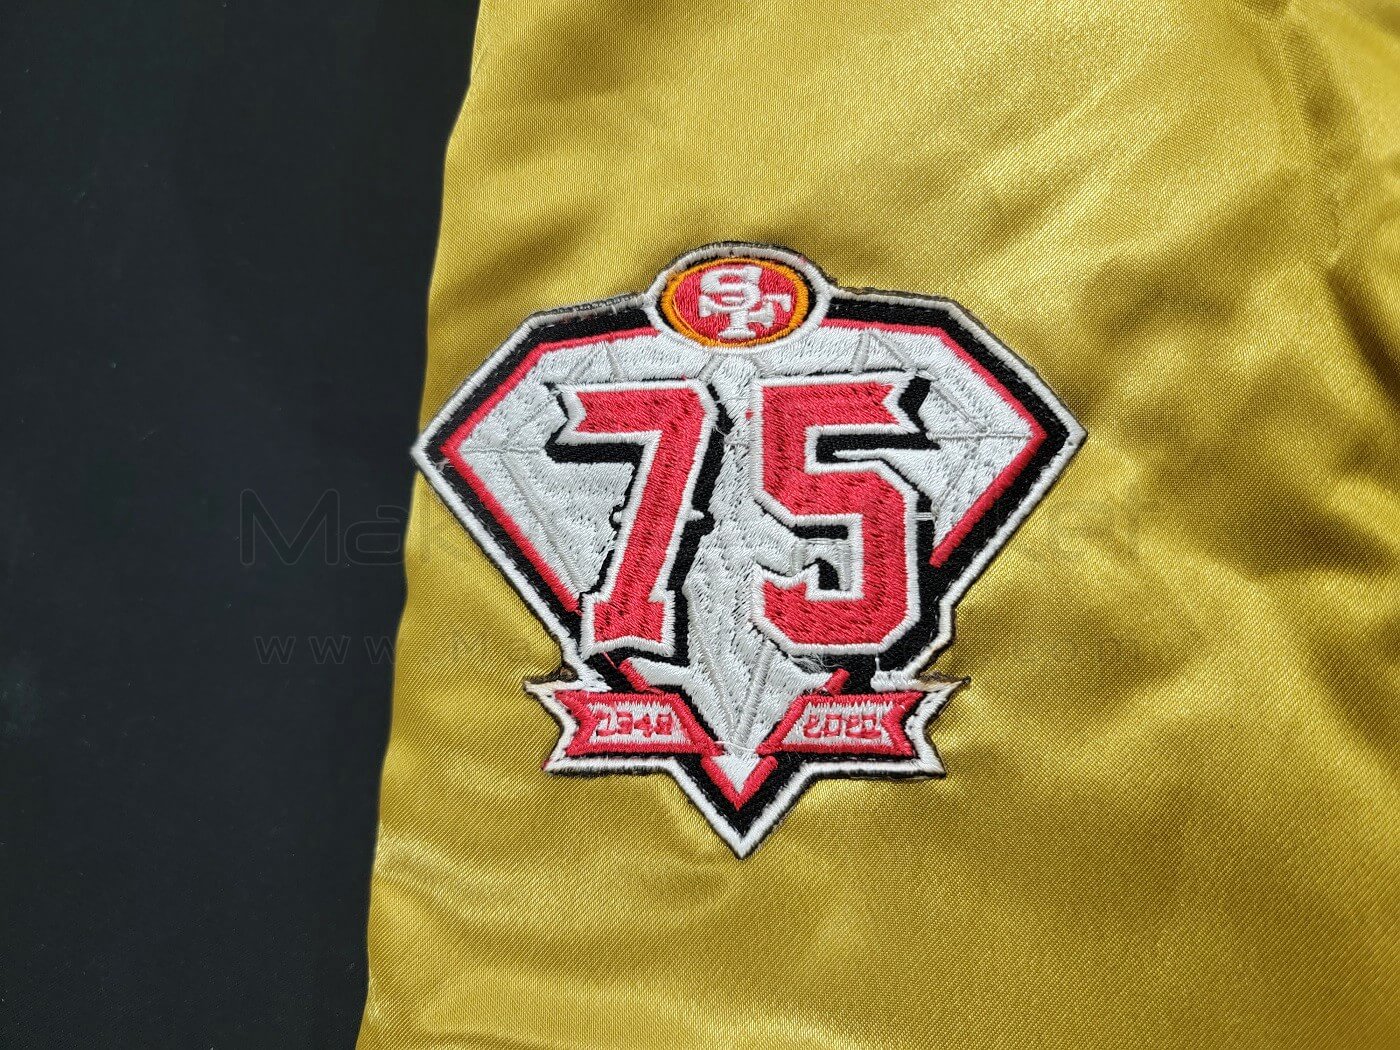 USA Jacket SF 49ers Faithful to The Bay Jacket